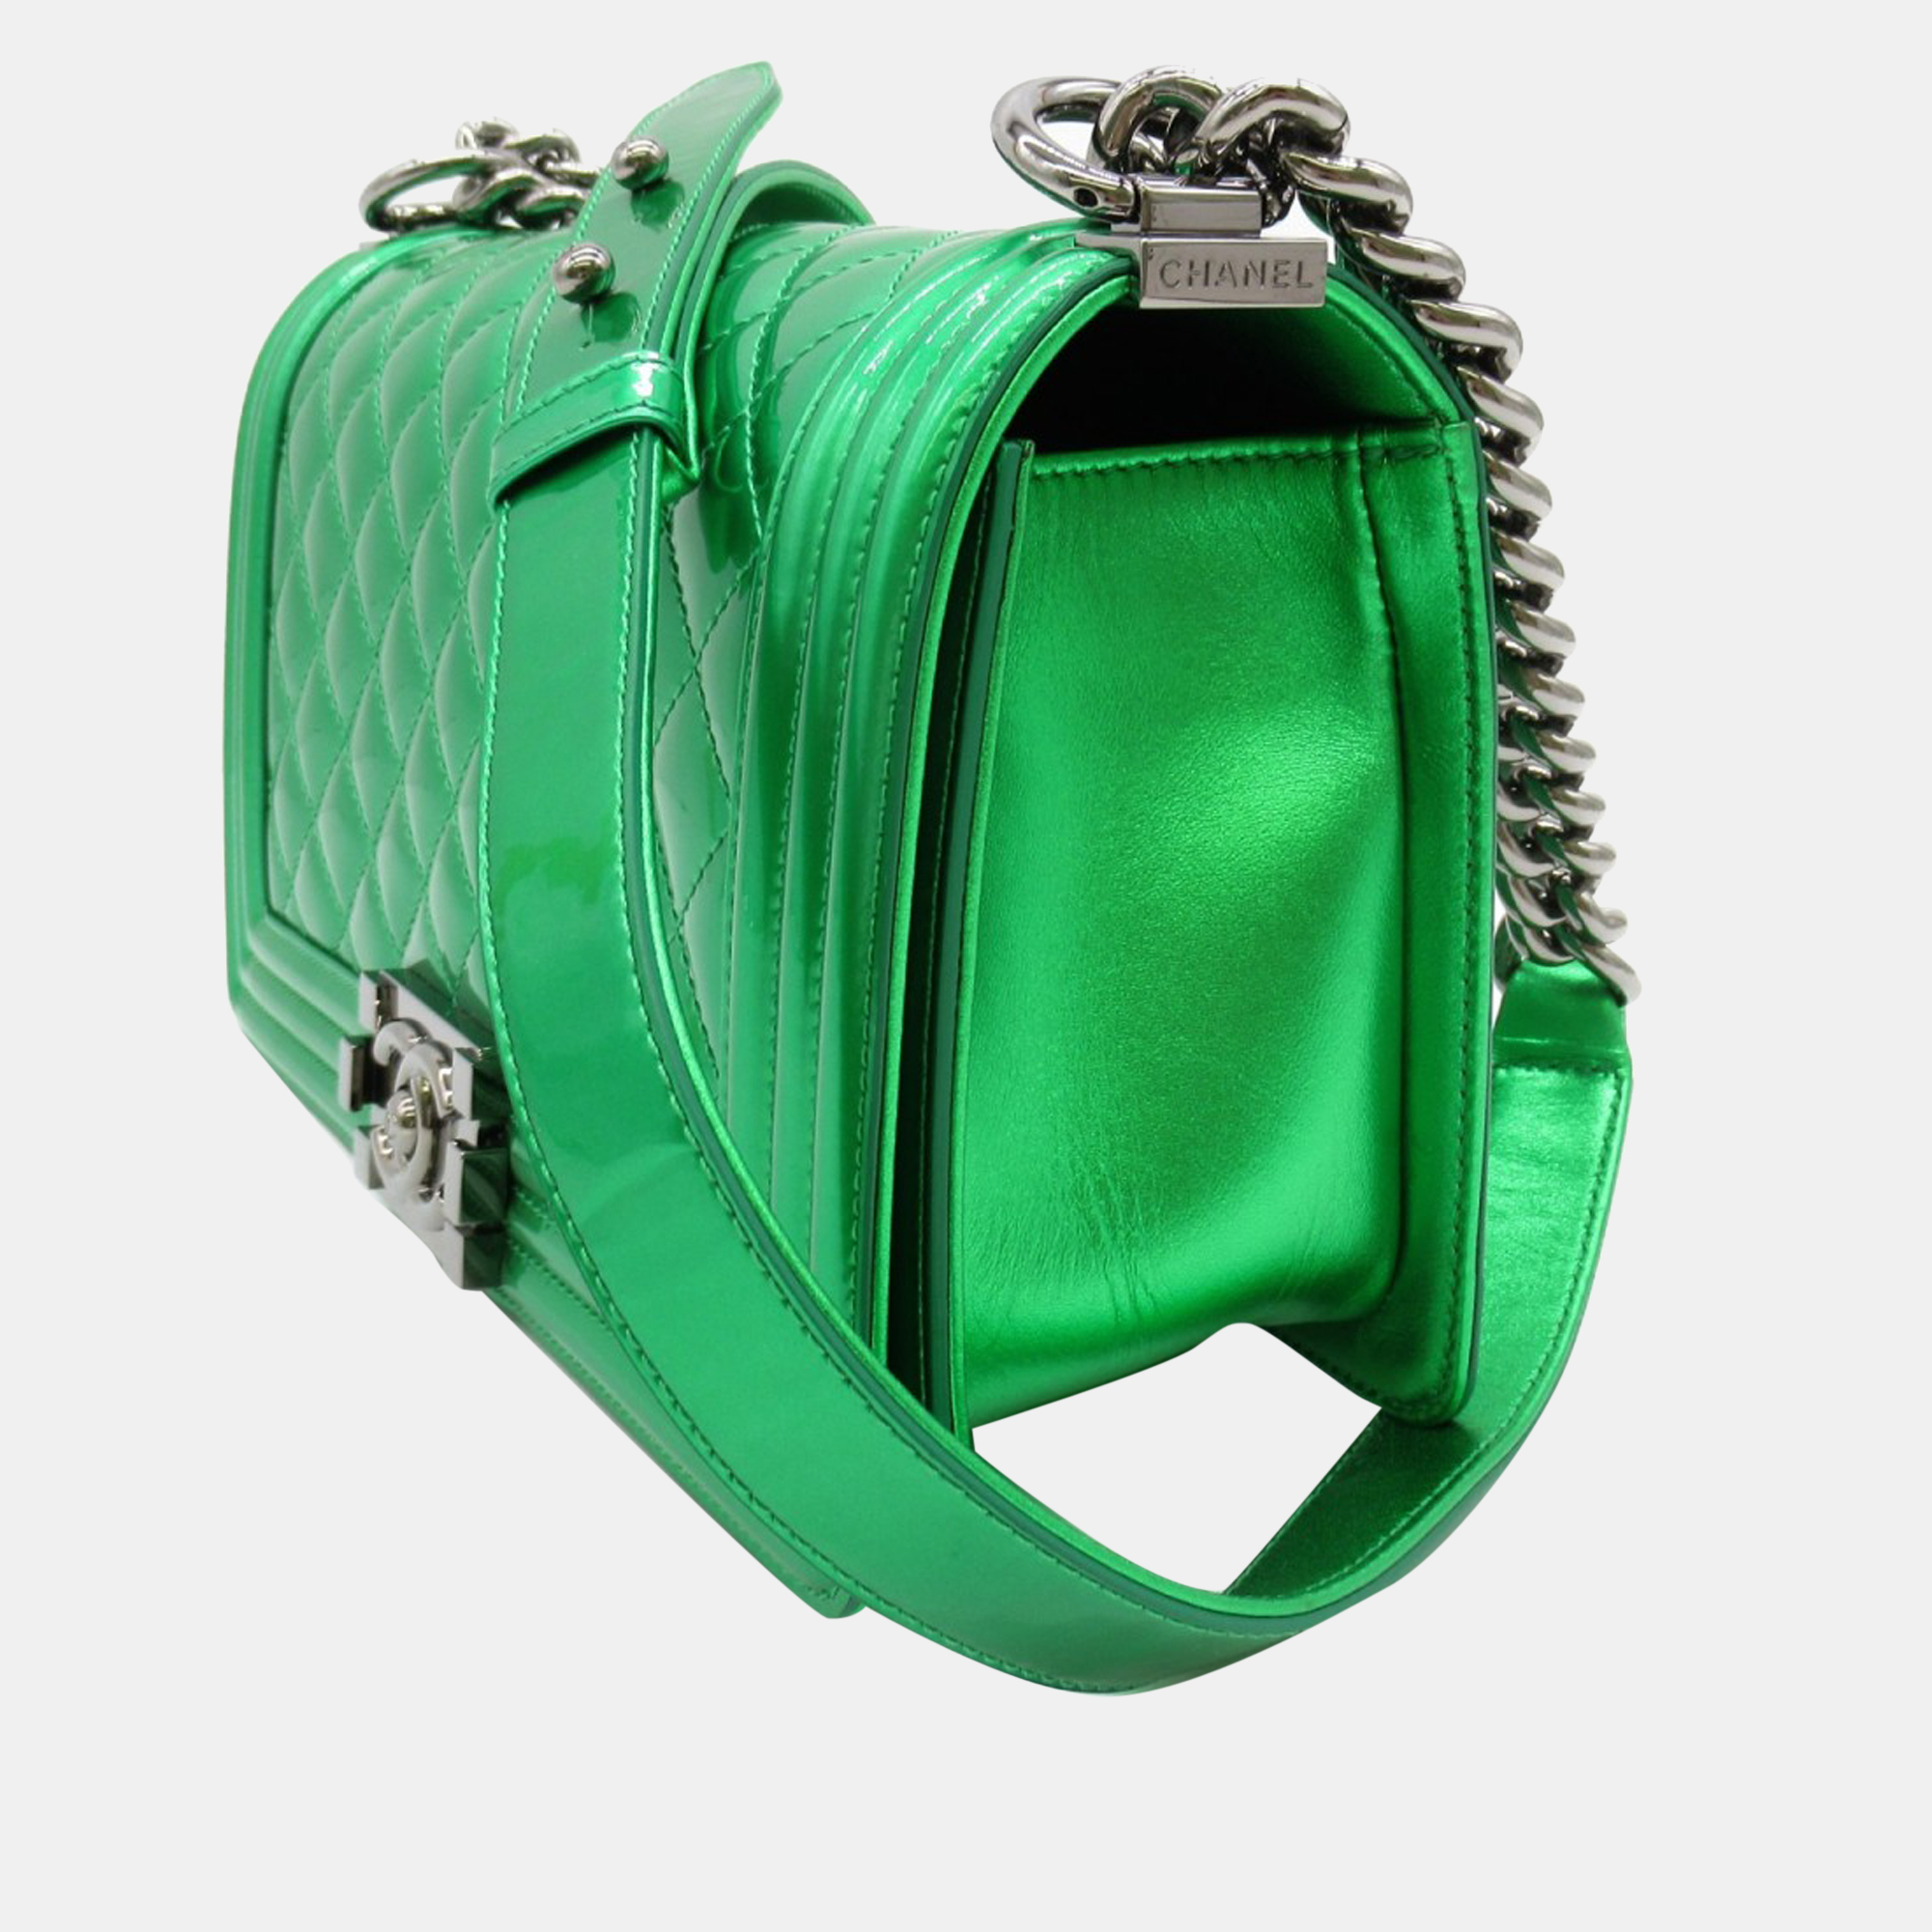 

Chanel Green Medium Classic Patent Le Boy Flap Bag Shoulder Bag